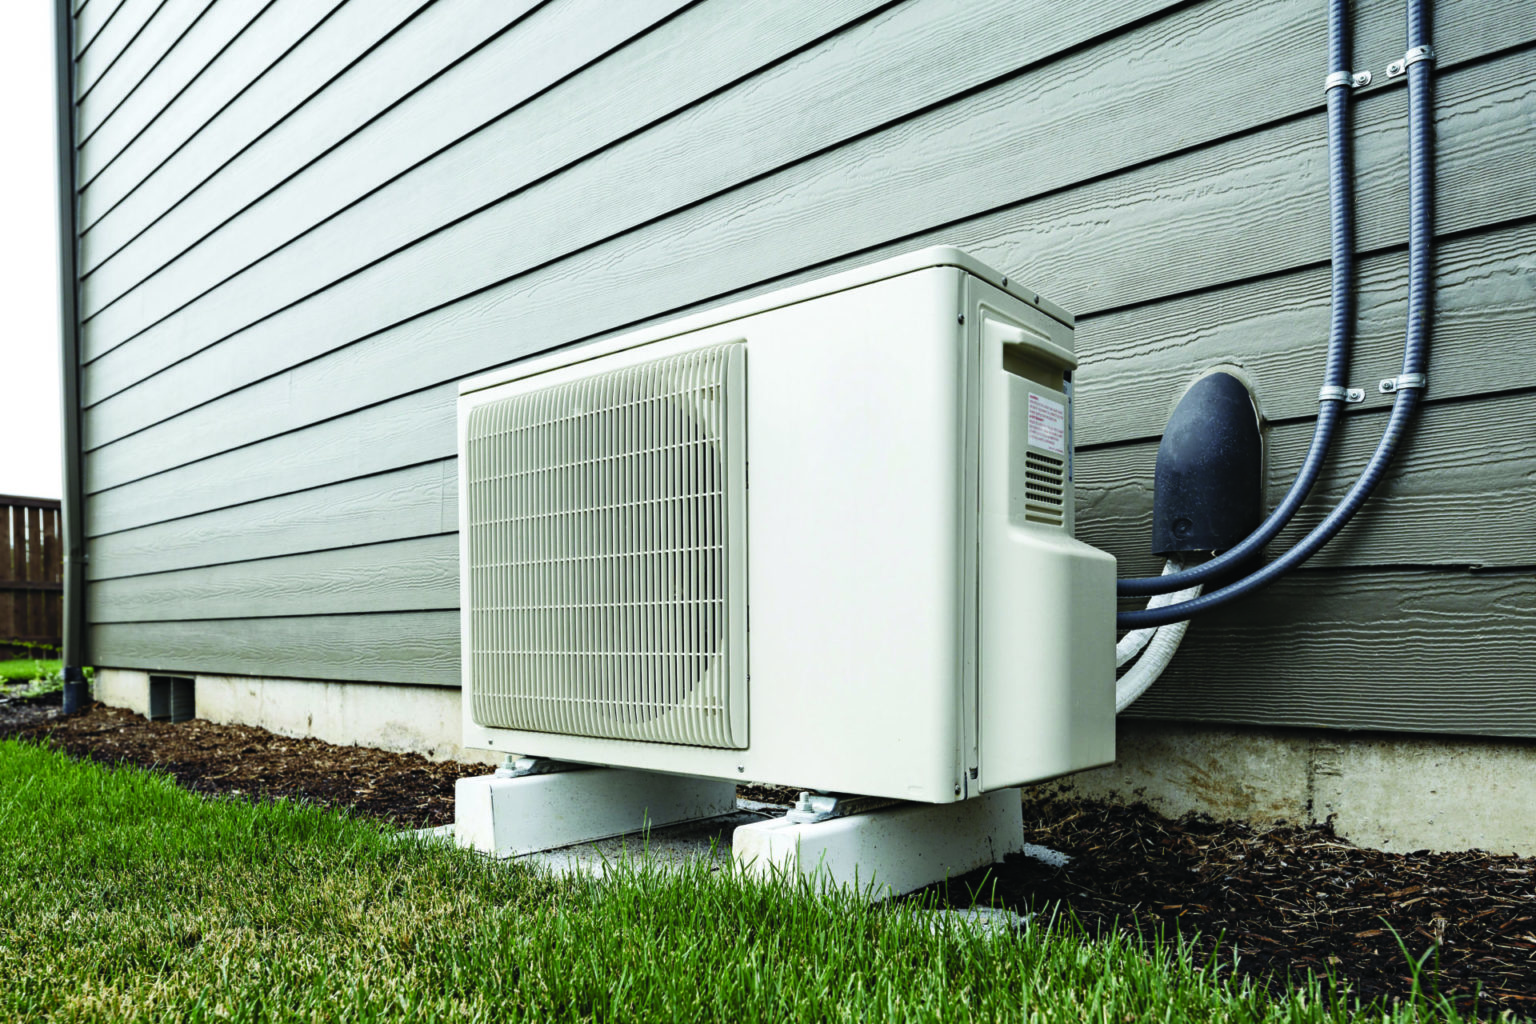 Residential HVAC Rebates Increase Benton REA